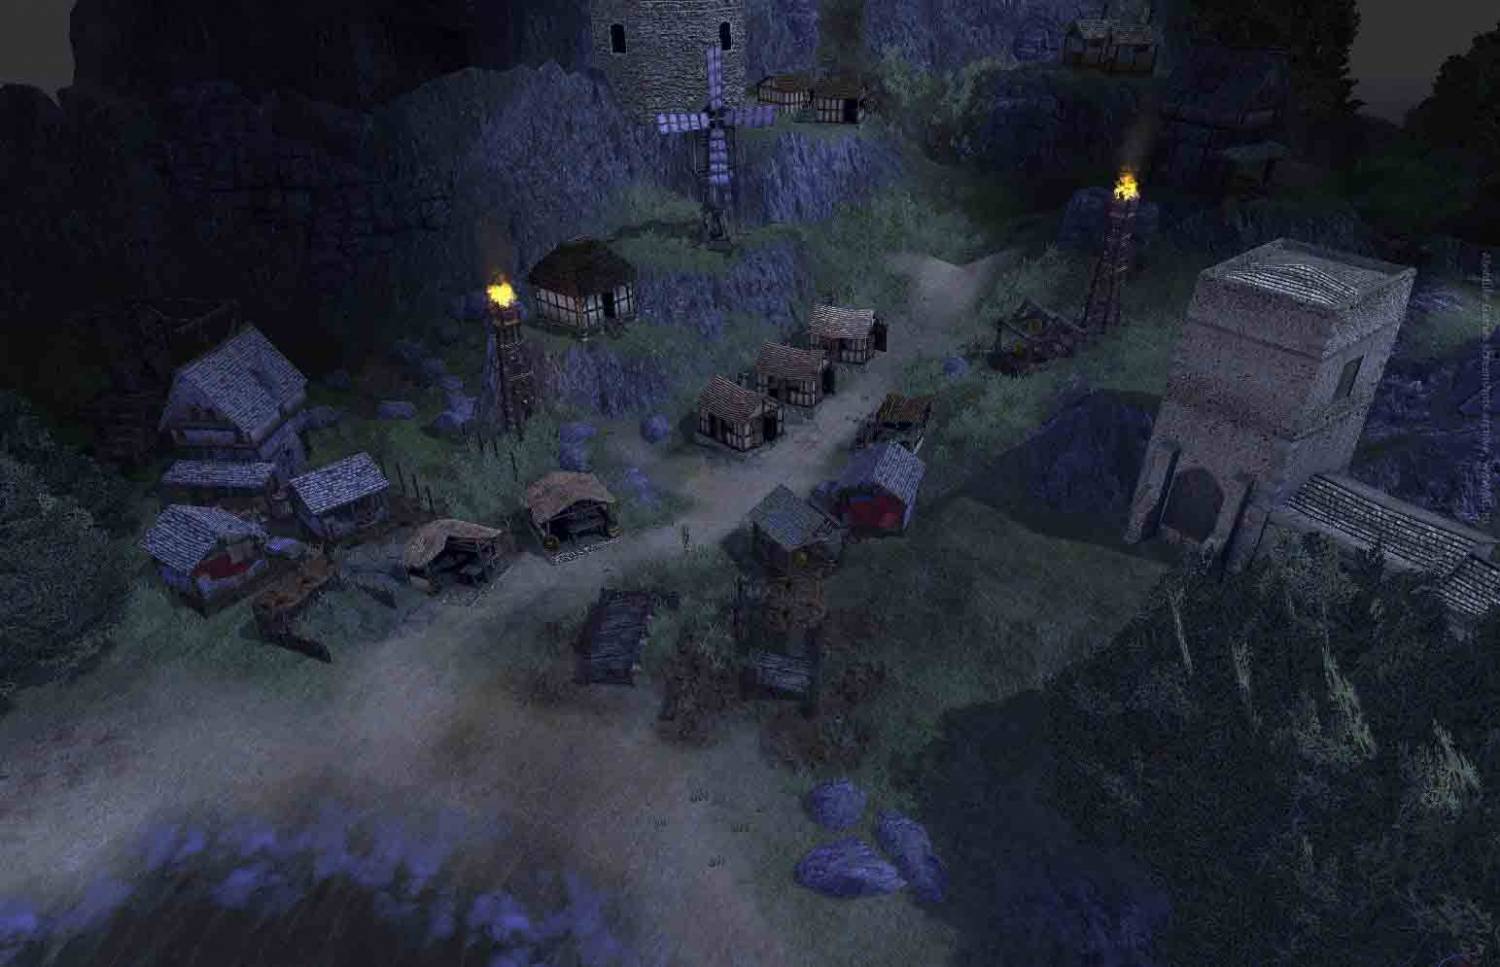 Скриншот из игры Stronghold 3 / Крепость 3 / Цитадель 3 2011